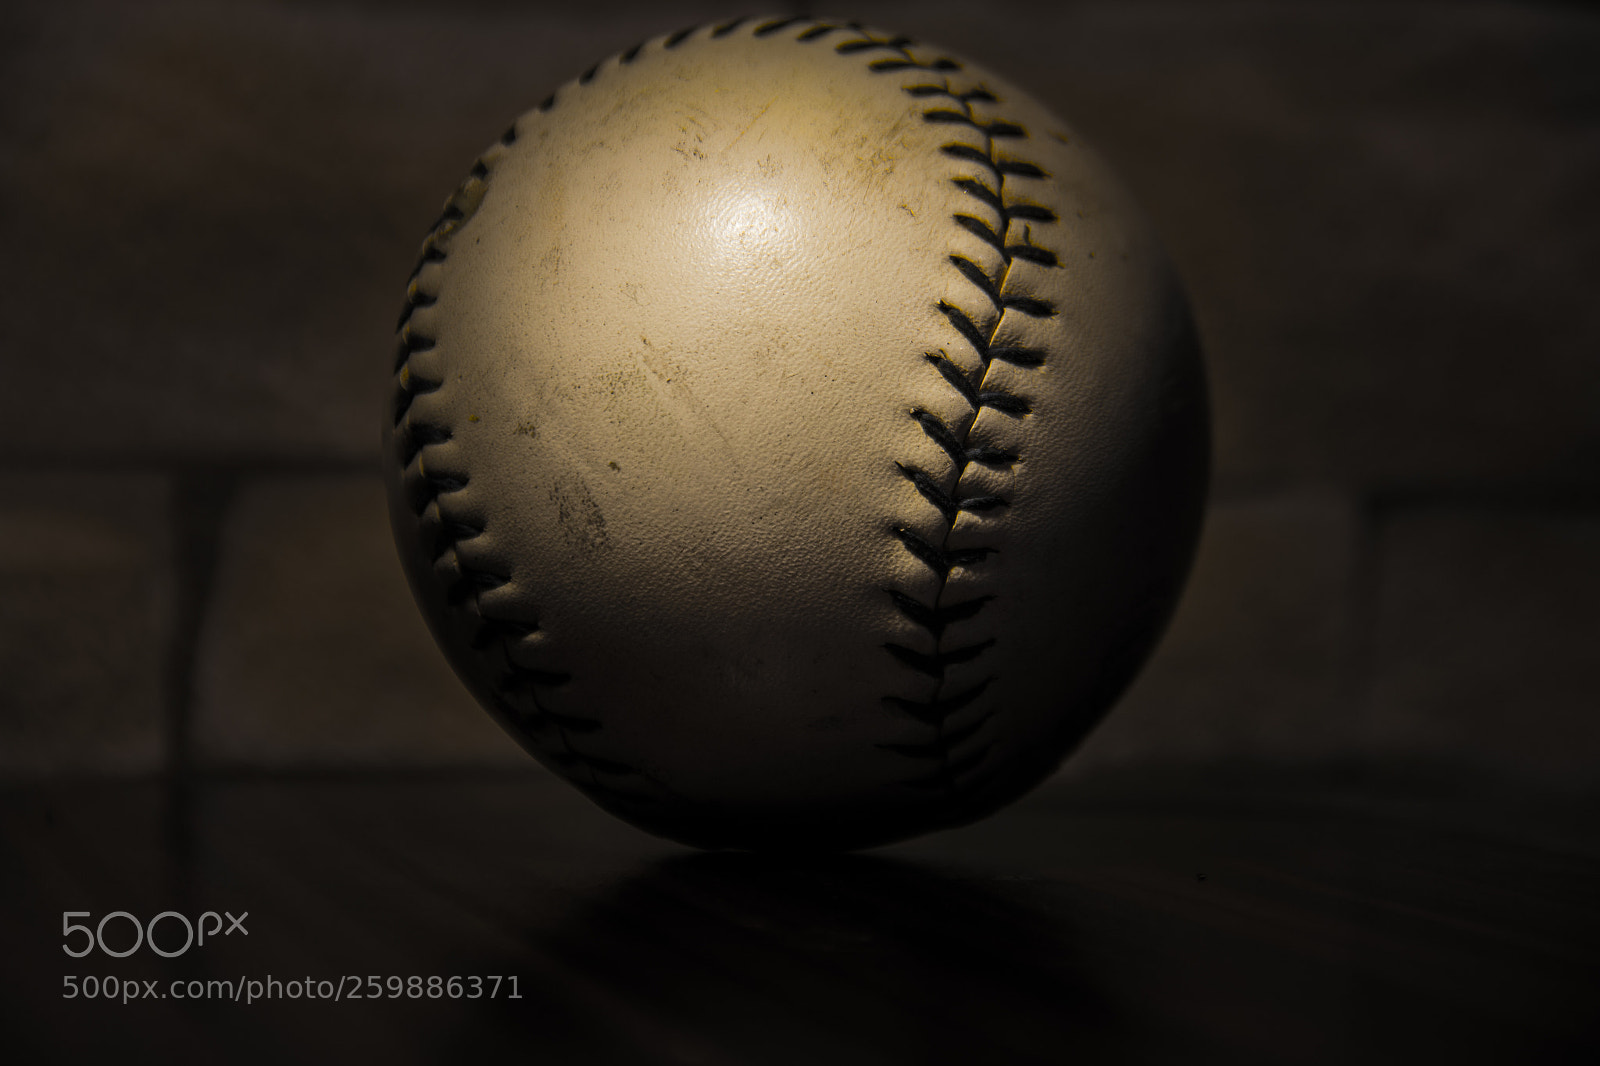 Canon EOS 60D sample photo. Baseball photography